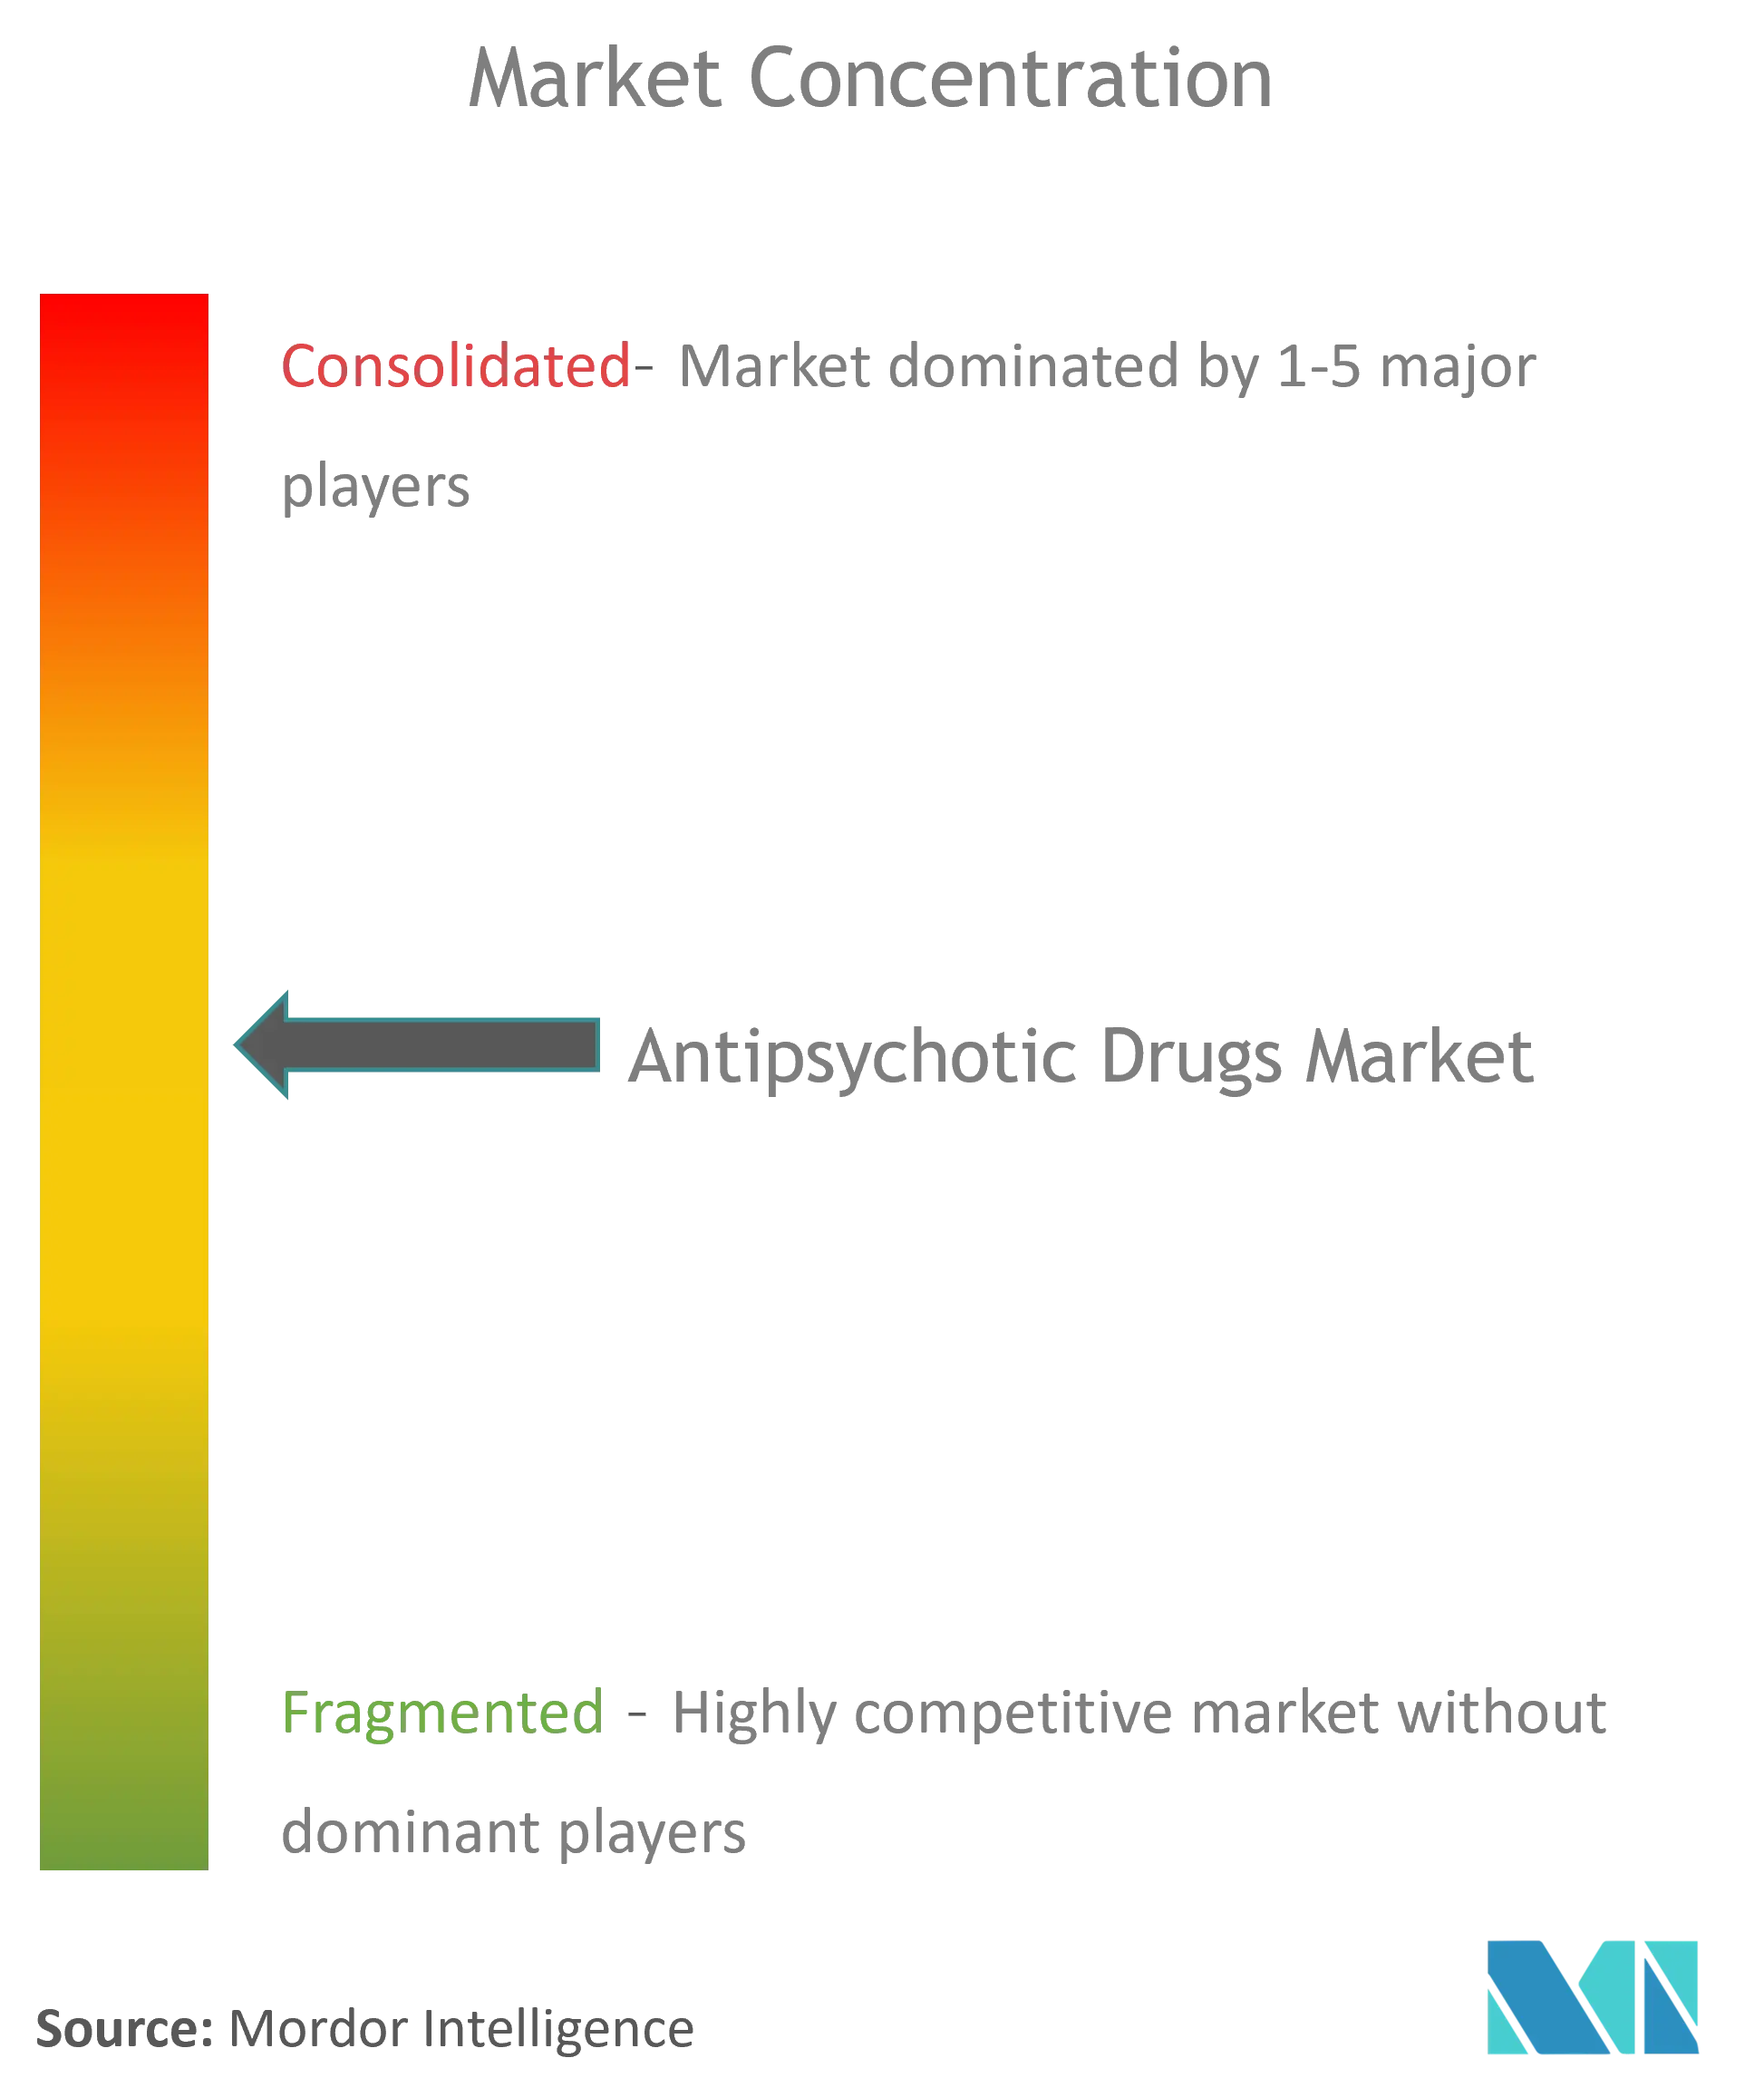 Marktkonzentration für Antipsychotika